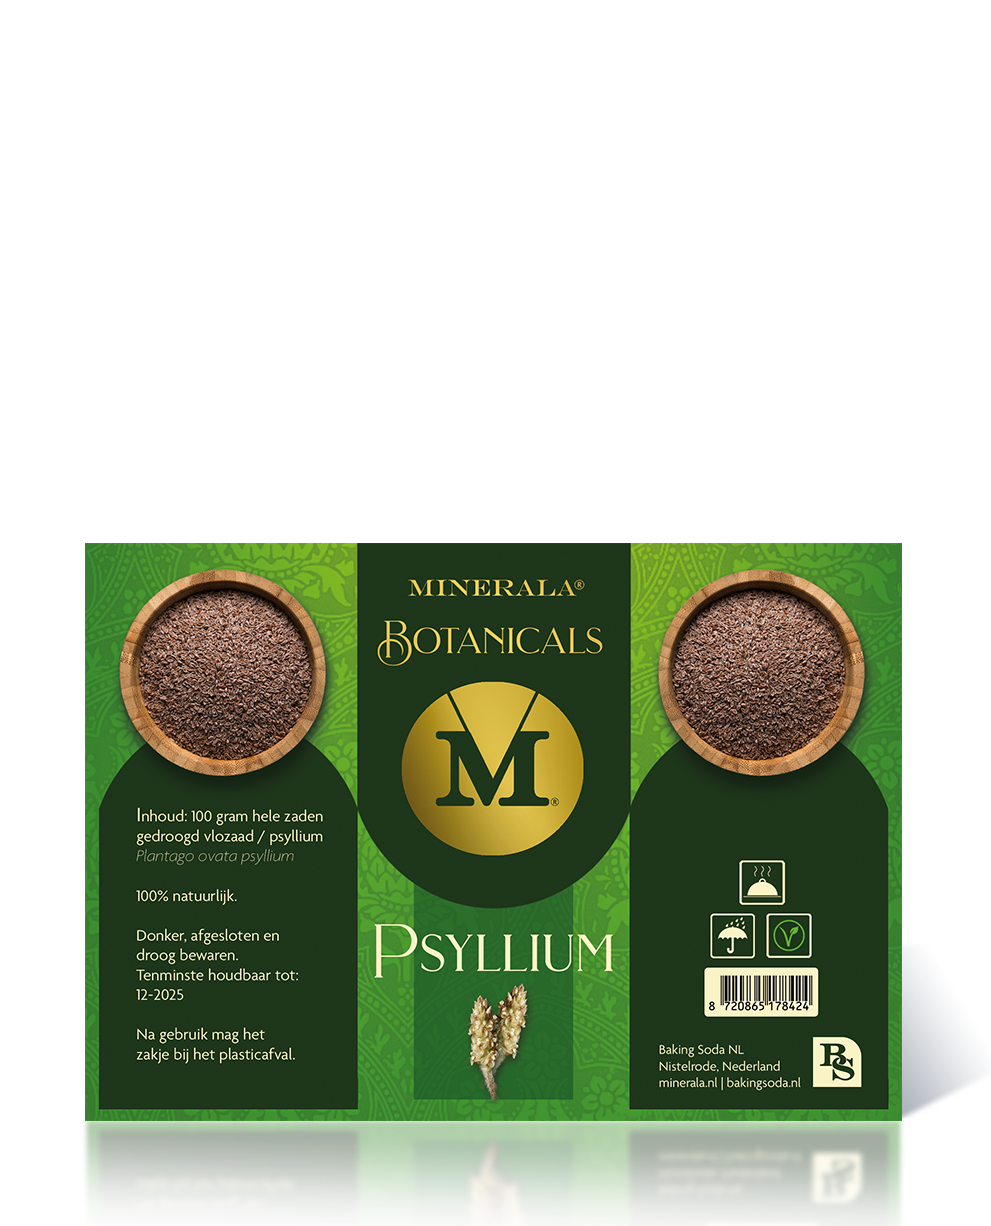 Minerala Botanicals psyllium - Bakingsoda NL